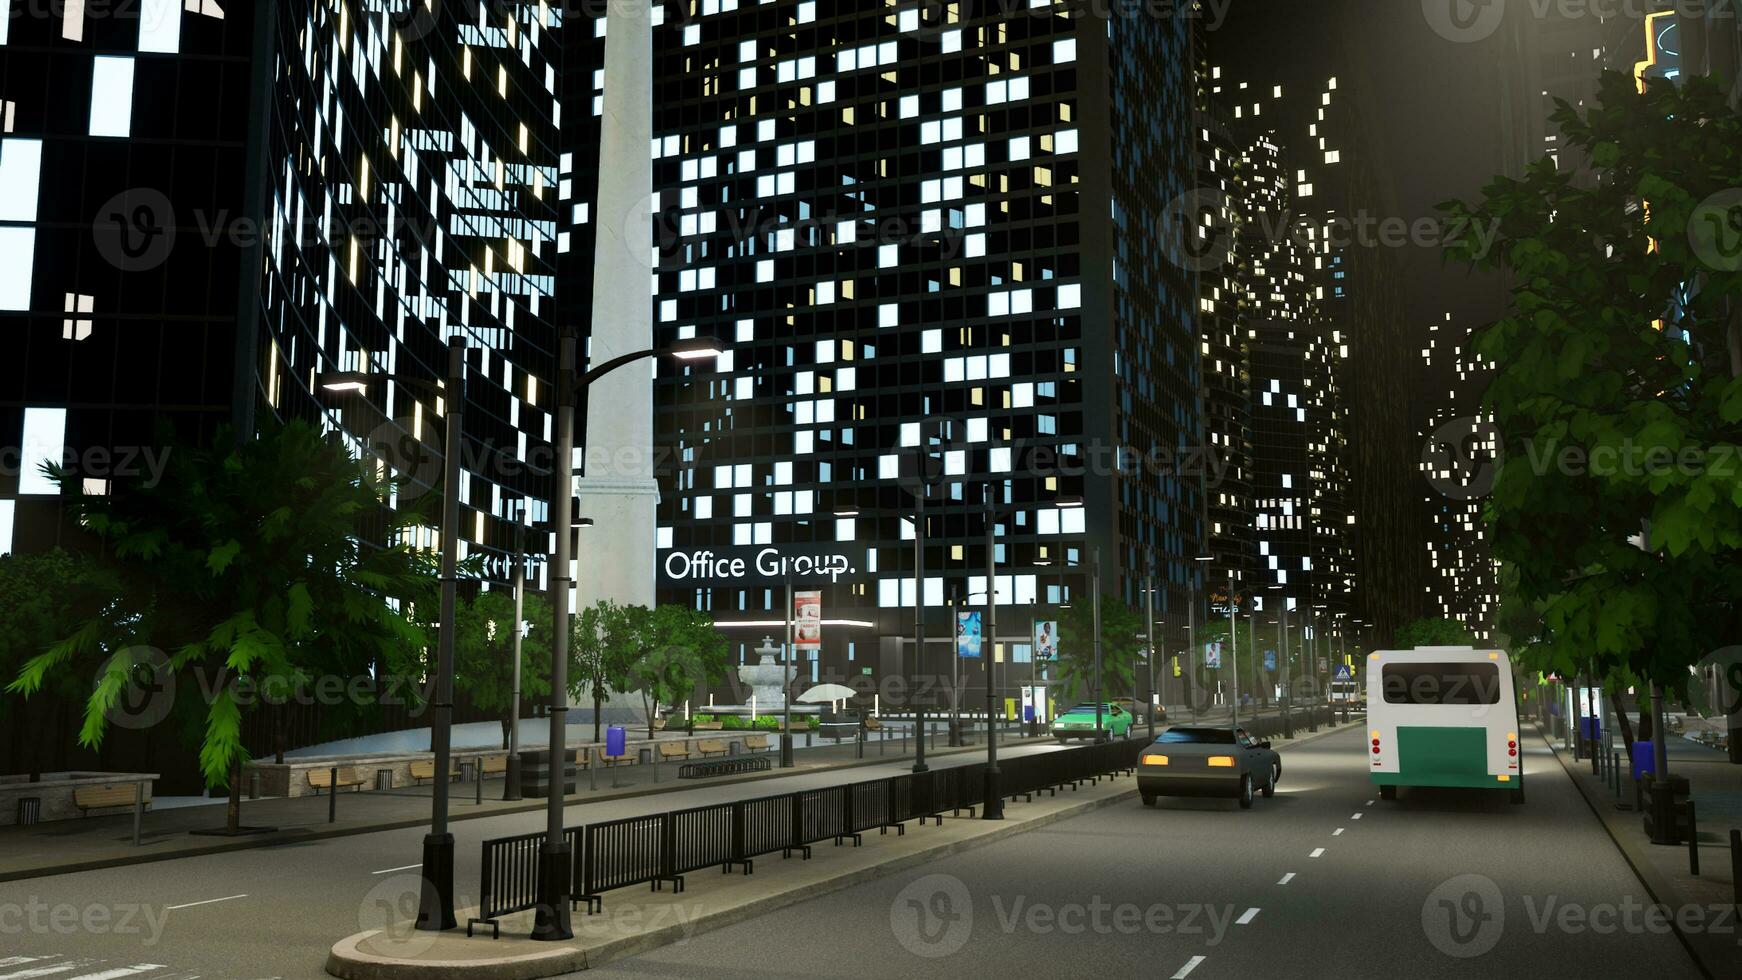 Fahrzeuge Fahren auf Stadt Center Straße Nächster zu Büro Gebäude im Geschäft Kreis Bereich, modern Wolkenkratzer und Autos. Büro Gebäude mit Beleuchtung blinkt beim Nacht. 3d machen Animation. foto